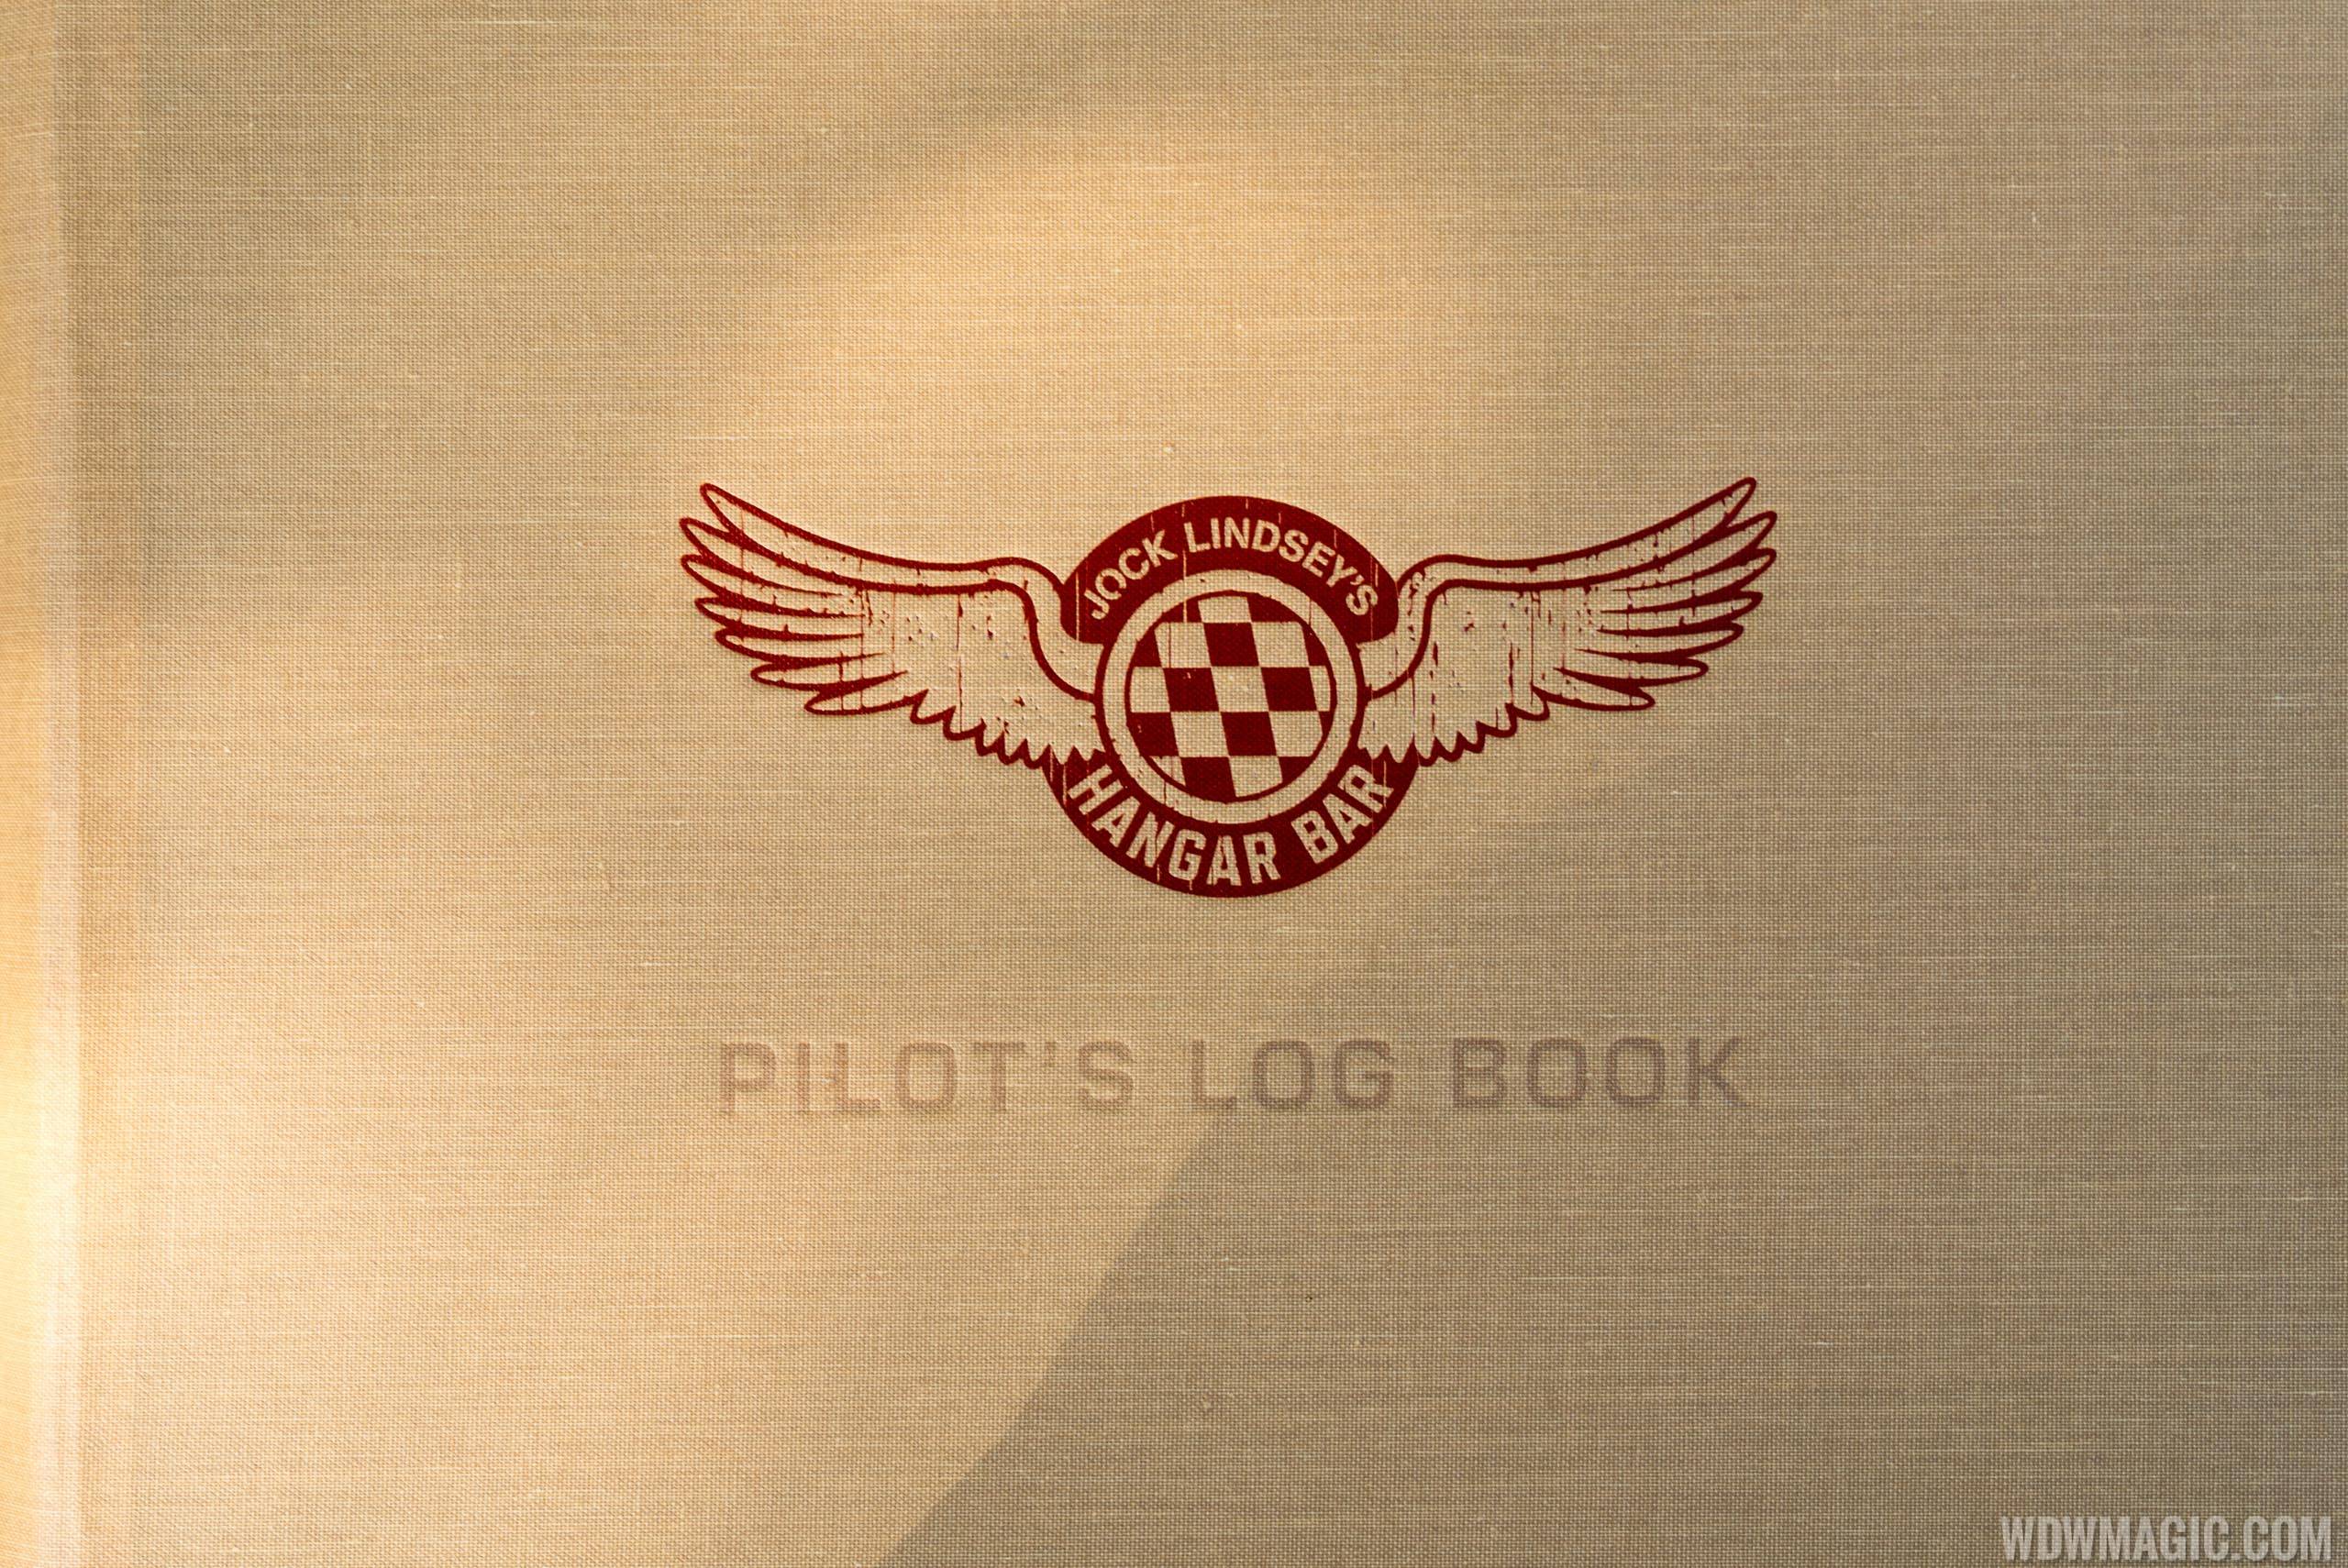 Jock Lindsey's Pilot's Log book - Full Menu